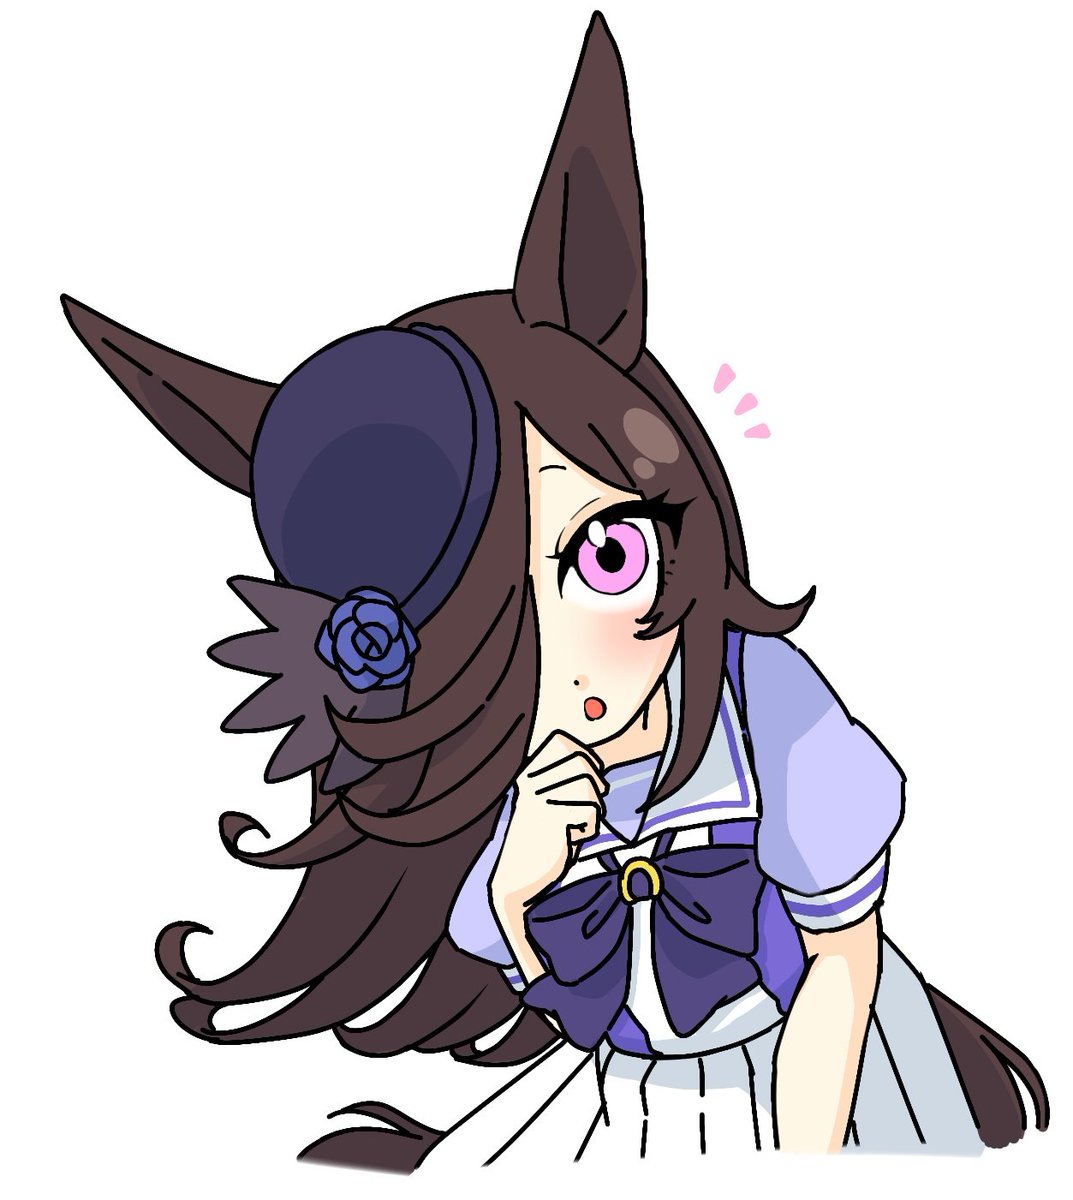 rice shower (umamusume) 1girl animal ears horse ears solo hat tracen school uniform hair over one eye  illustration images